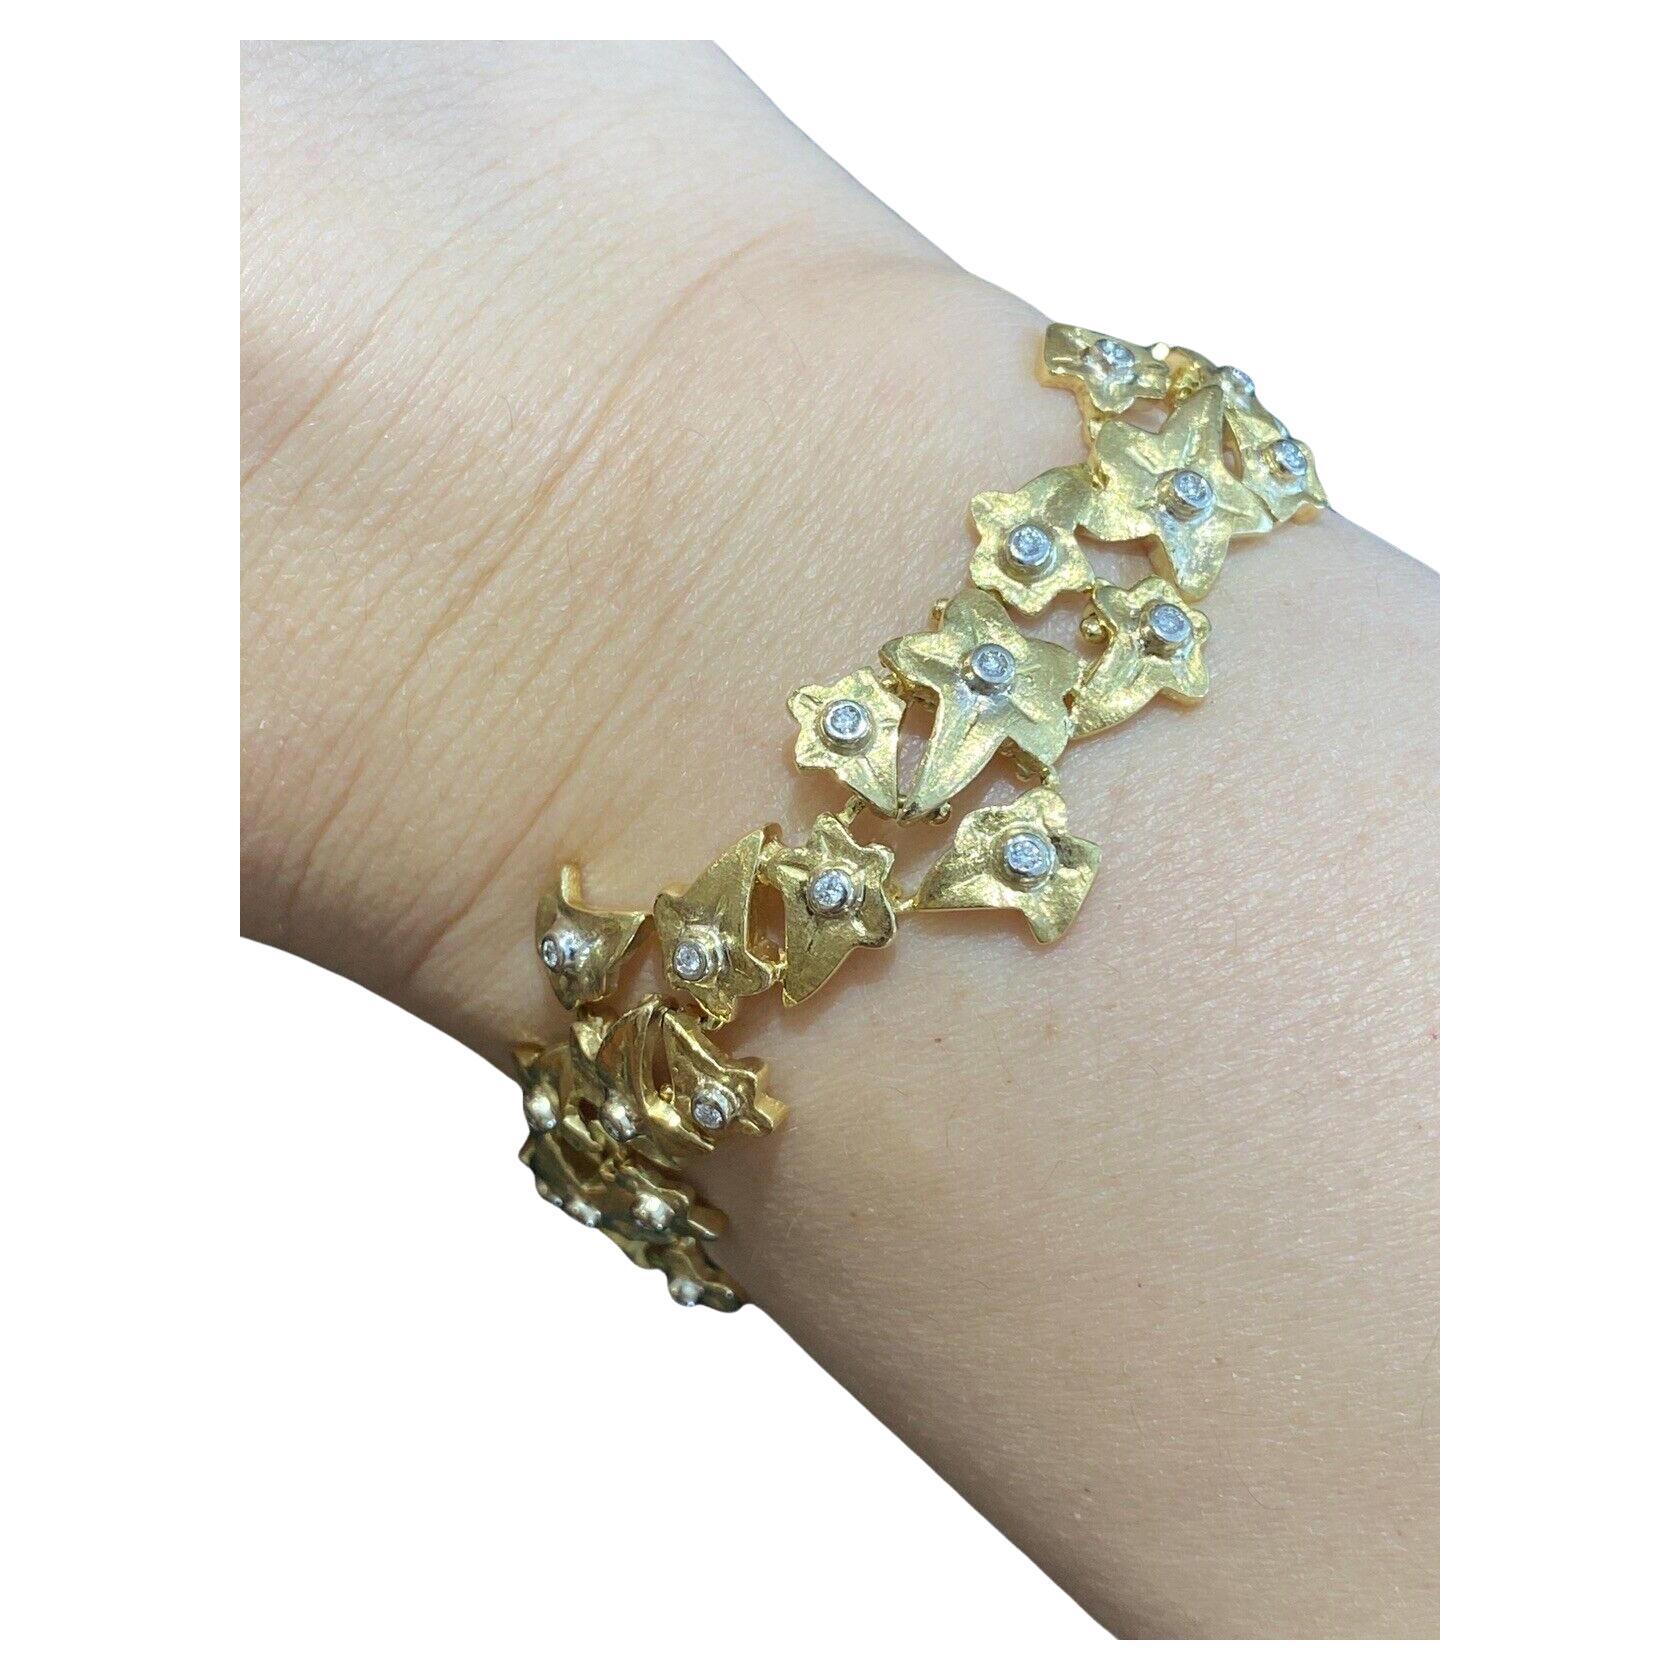 Vintage ROBERTO COIN Blatt Diamant-Armband in 18k Gelbgold

Das Leaf Diamond Bracelet von Roberto Coin ist mit 39 runden Diamanten im Brillantschliff in 18k Gelbgold gefasst.

Das Gesamtgewicht der Diamanten beträgt 0,60 Karat. 
Die Qualität der